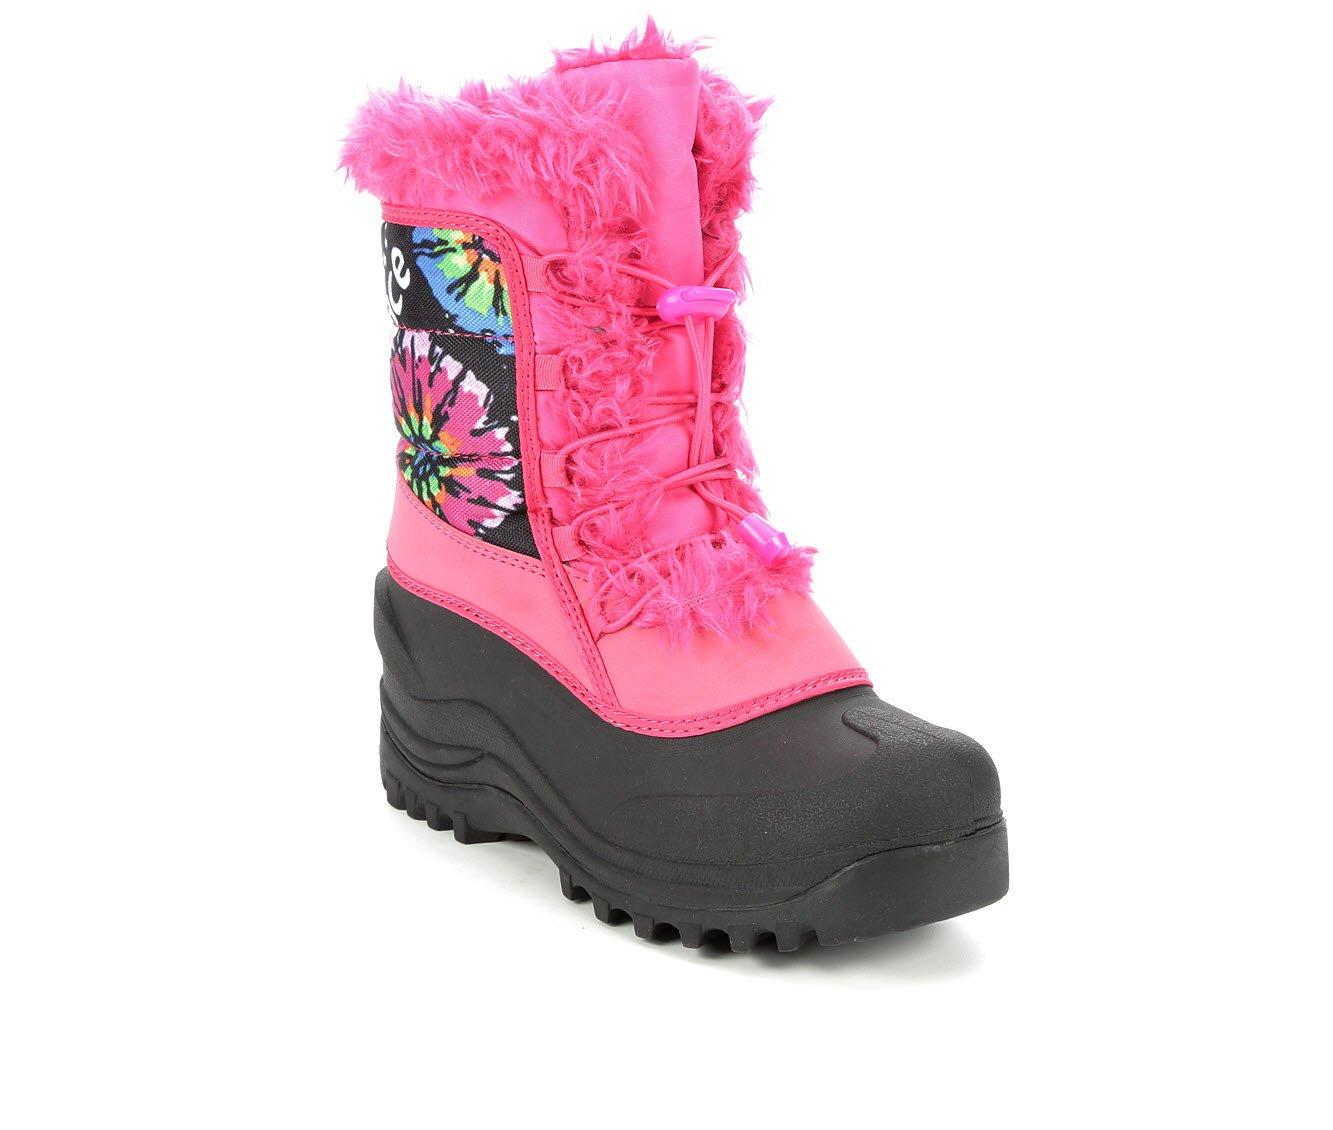 Girls' Itasca Sonoma Little Kid & Big Celeste Multi Winter Boots